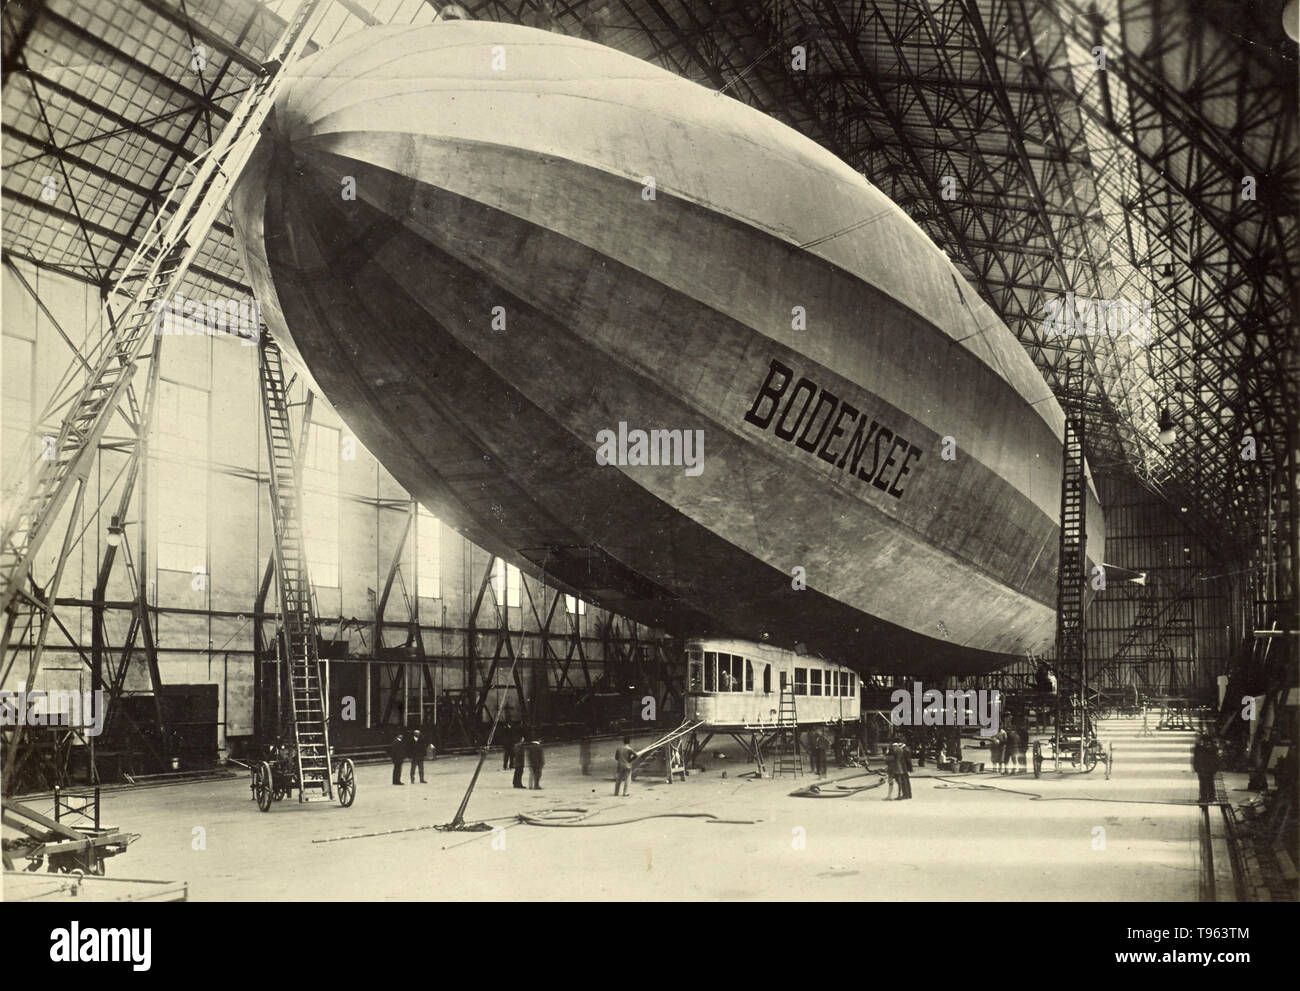 Dirigible rígido de Bodensee. Fedele Azari, Italiano (1895 - 1930); Italia; 1919 - 1921; Gelatina de plata imprimir. El Bodensee fue una aeronave de transporte de pasajeros construido por Luftschiffbau Zeppelin en 1919 para operar un servicio de pasajeros entre Berlín y Friedrichshafen. Foto de stock